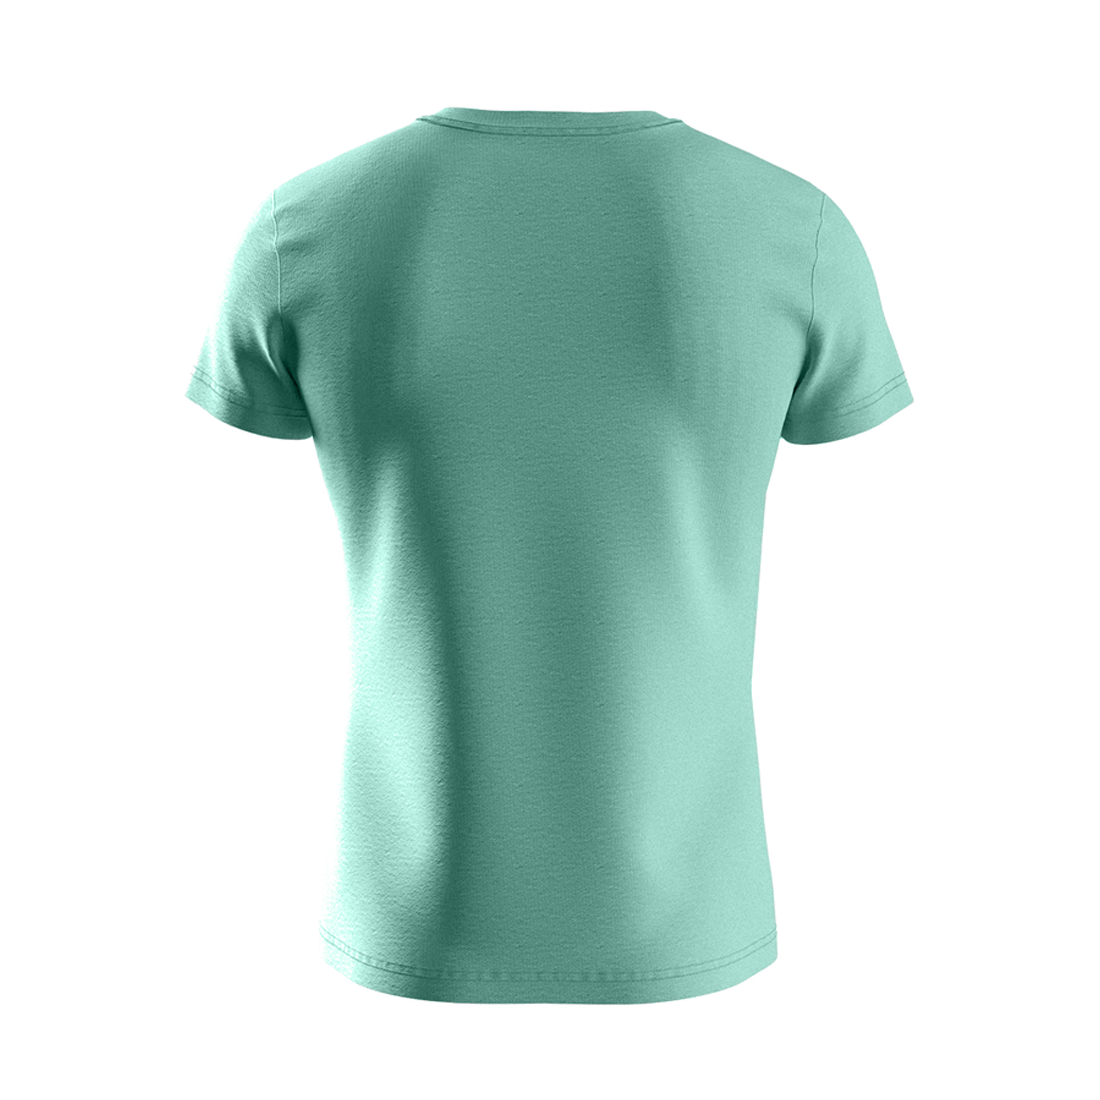 Premium Cotton Basic V-neck T-shirt, Mint